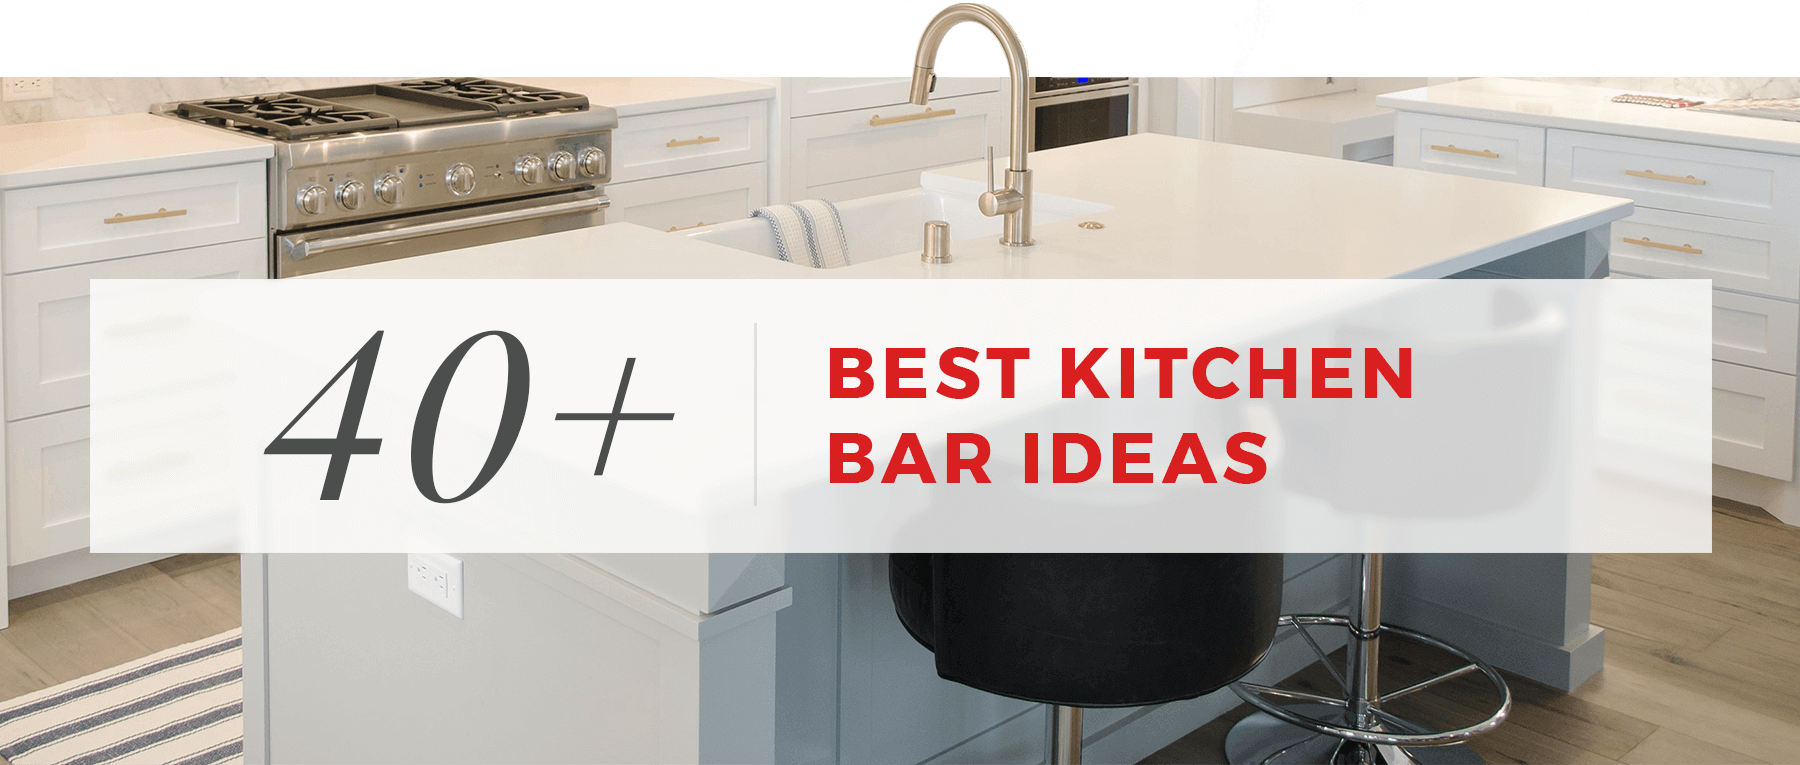 40 Best Kitchen Bar Ideas, Kitchen Cabinet Bar Design